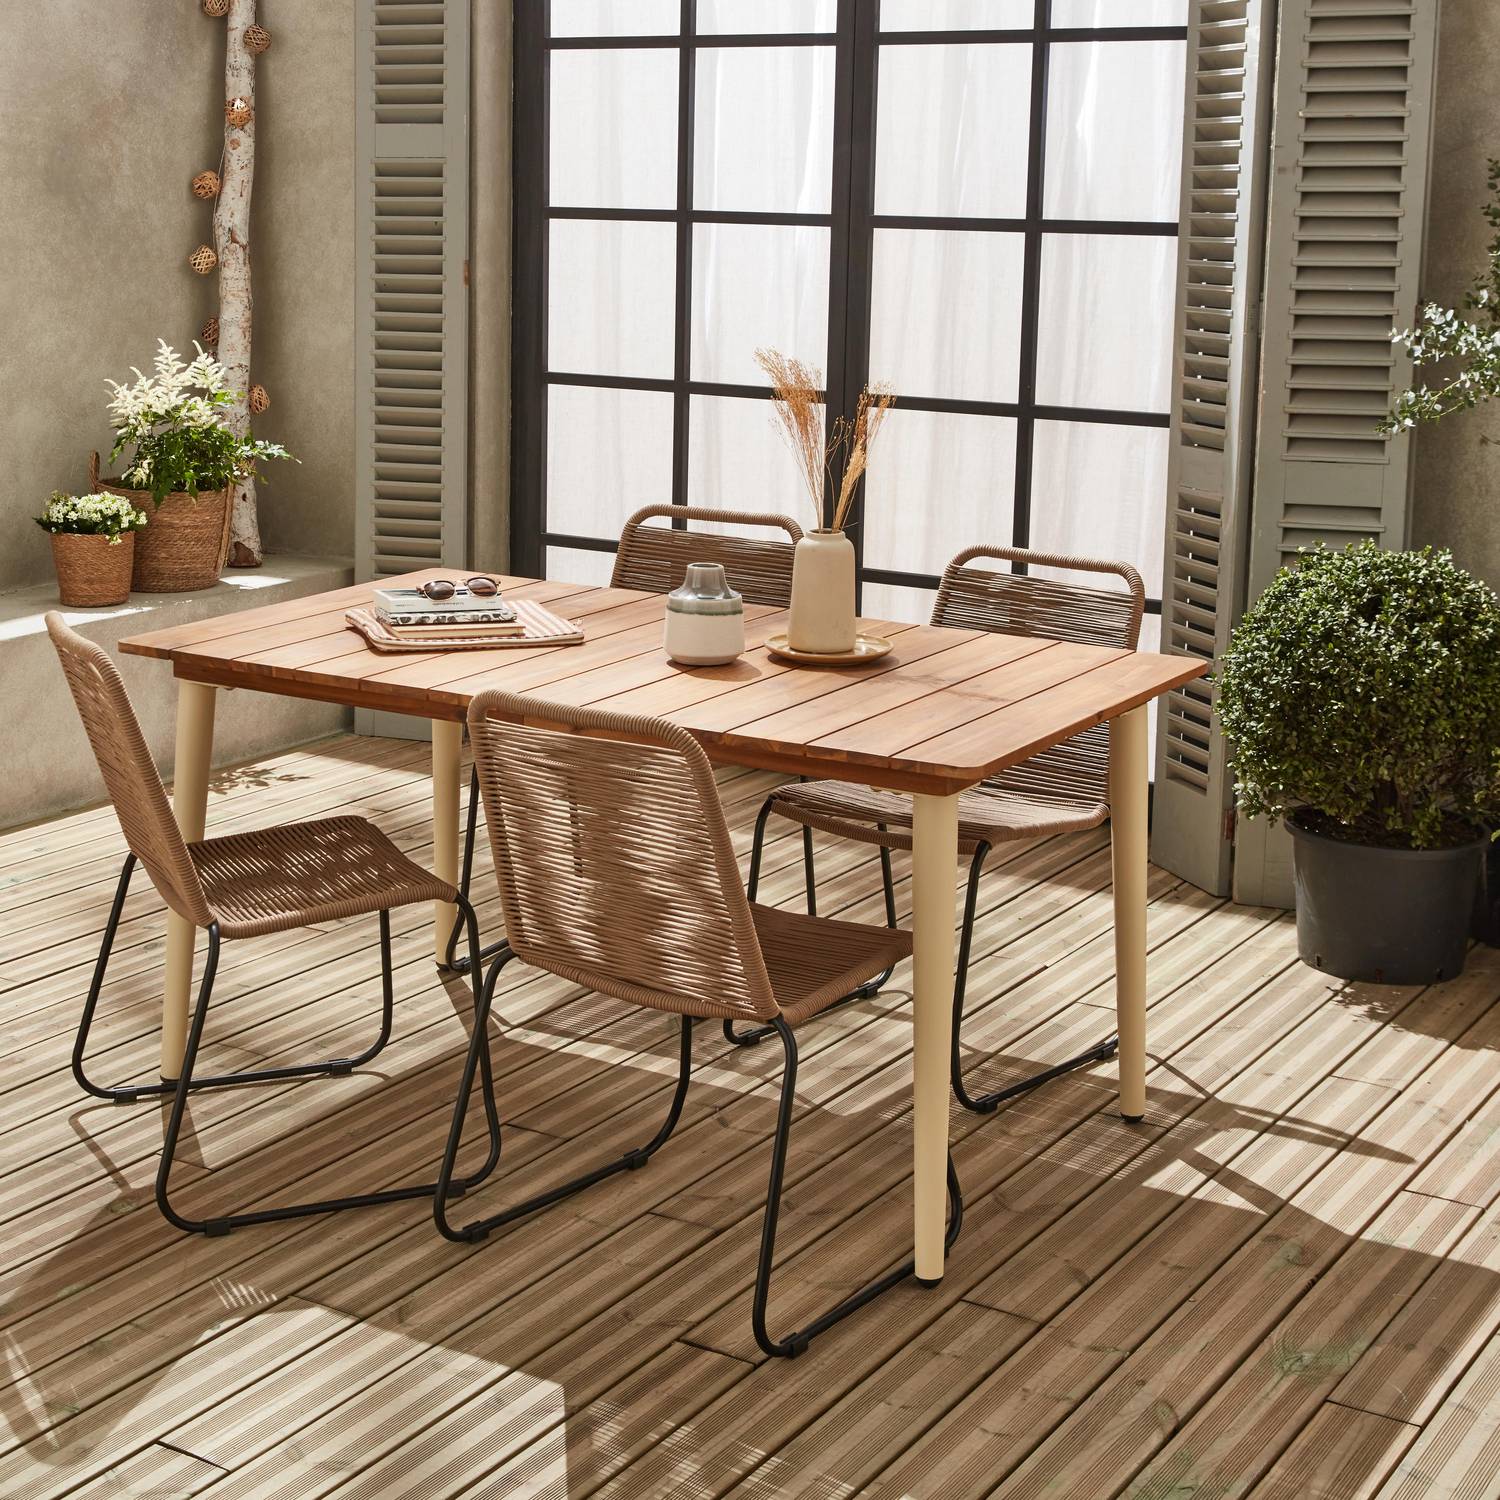 Table de jardin MARINGA bois et métal ivoire 150cm + 4 chaises de jardin en corde beige BRASILIA, empilables Photo2